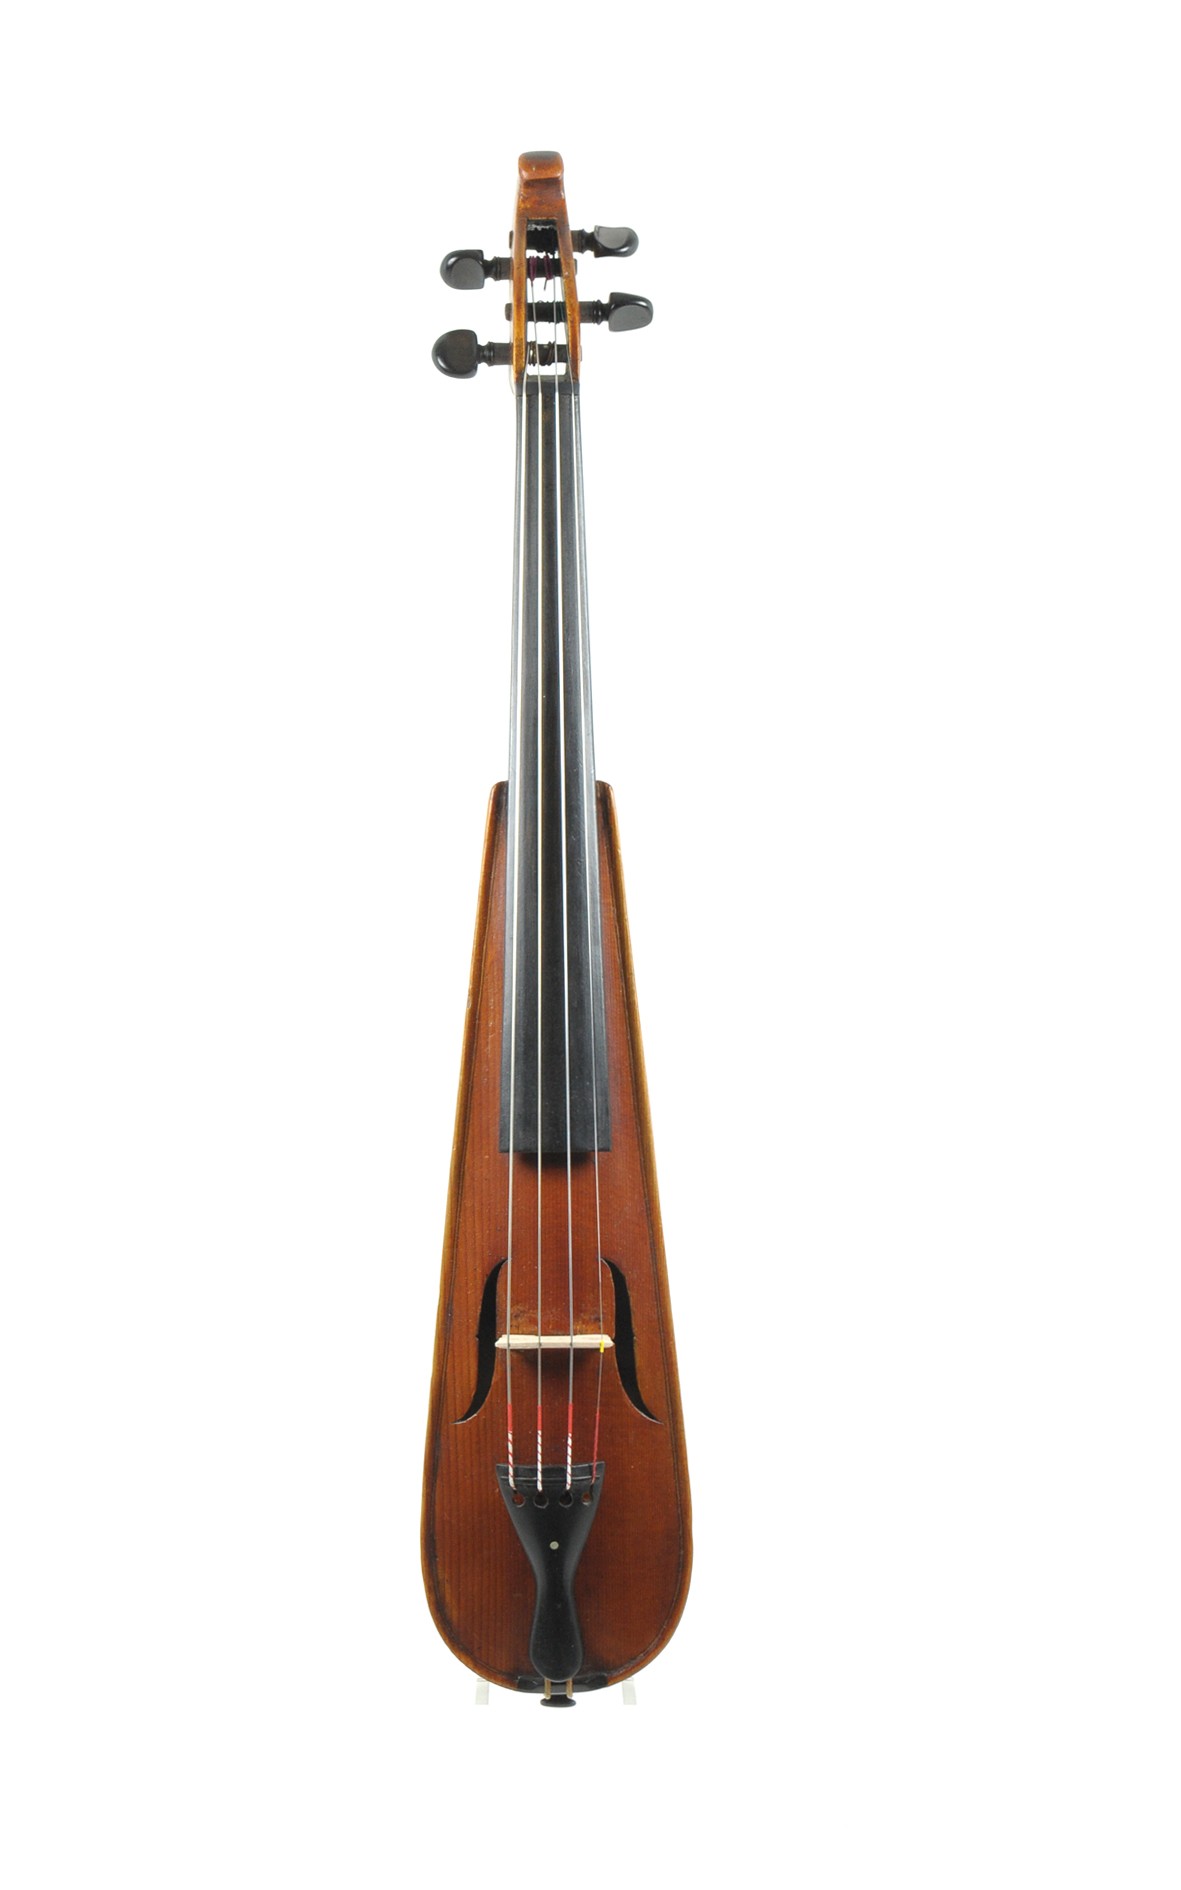 Pochette Tanzmeistergeige kit violin, Rieger Munich approx. 1900 - table